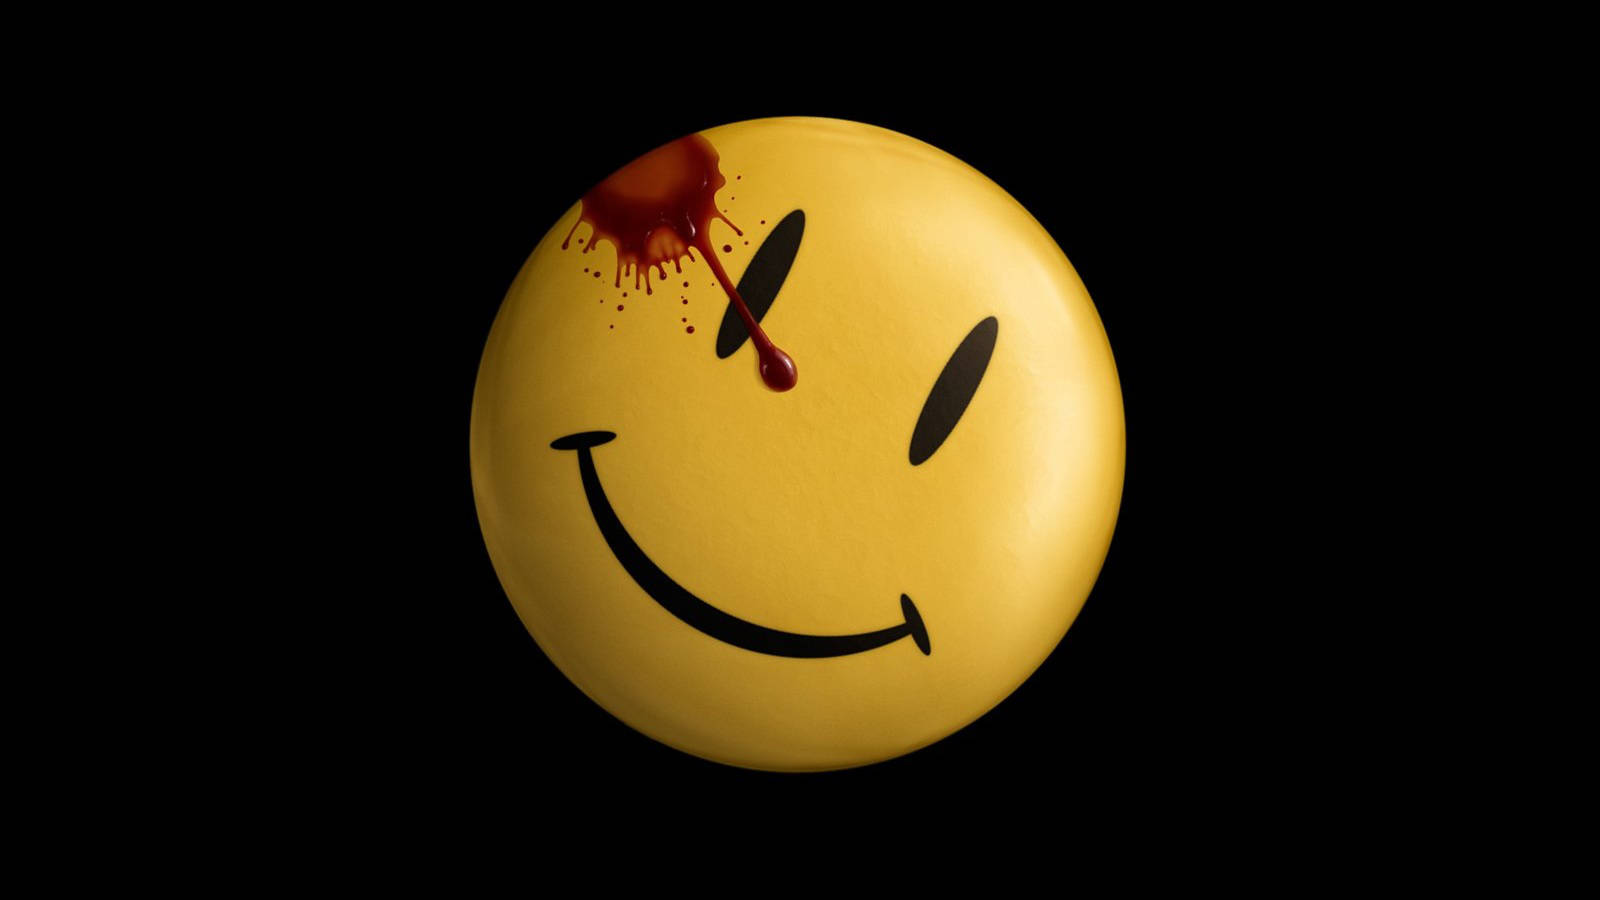 Watchmen3d Blodig Smiley. Wallpaper